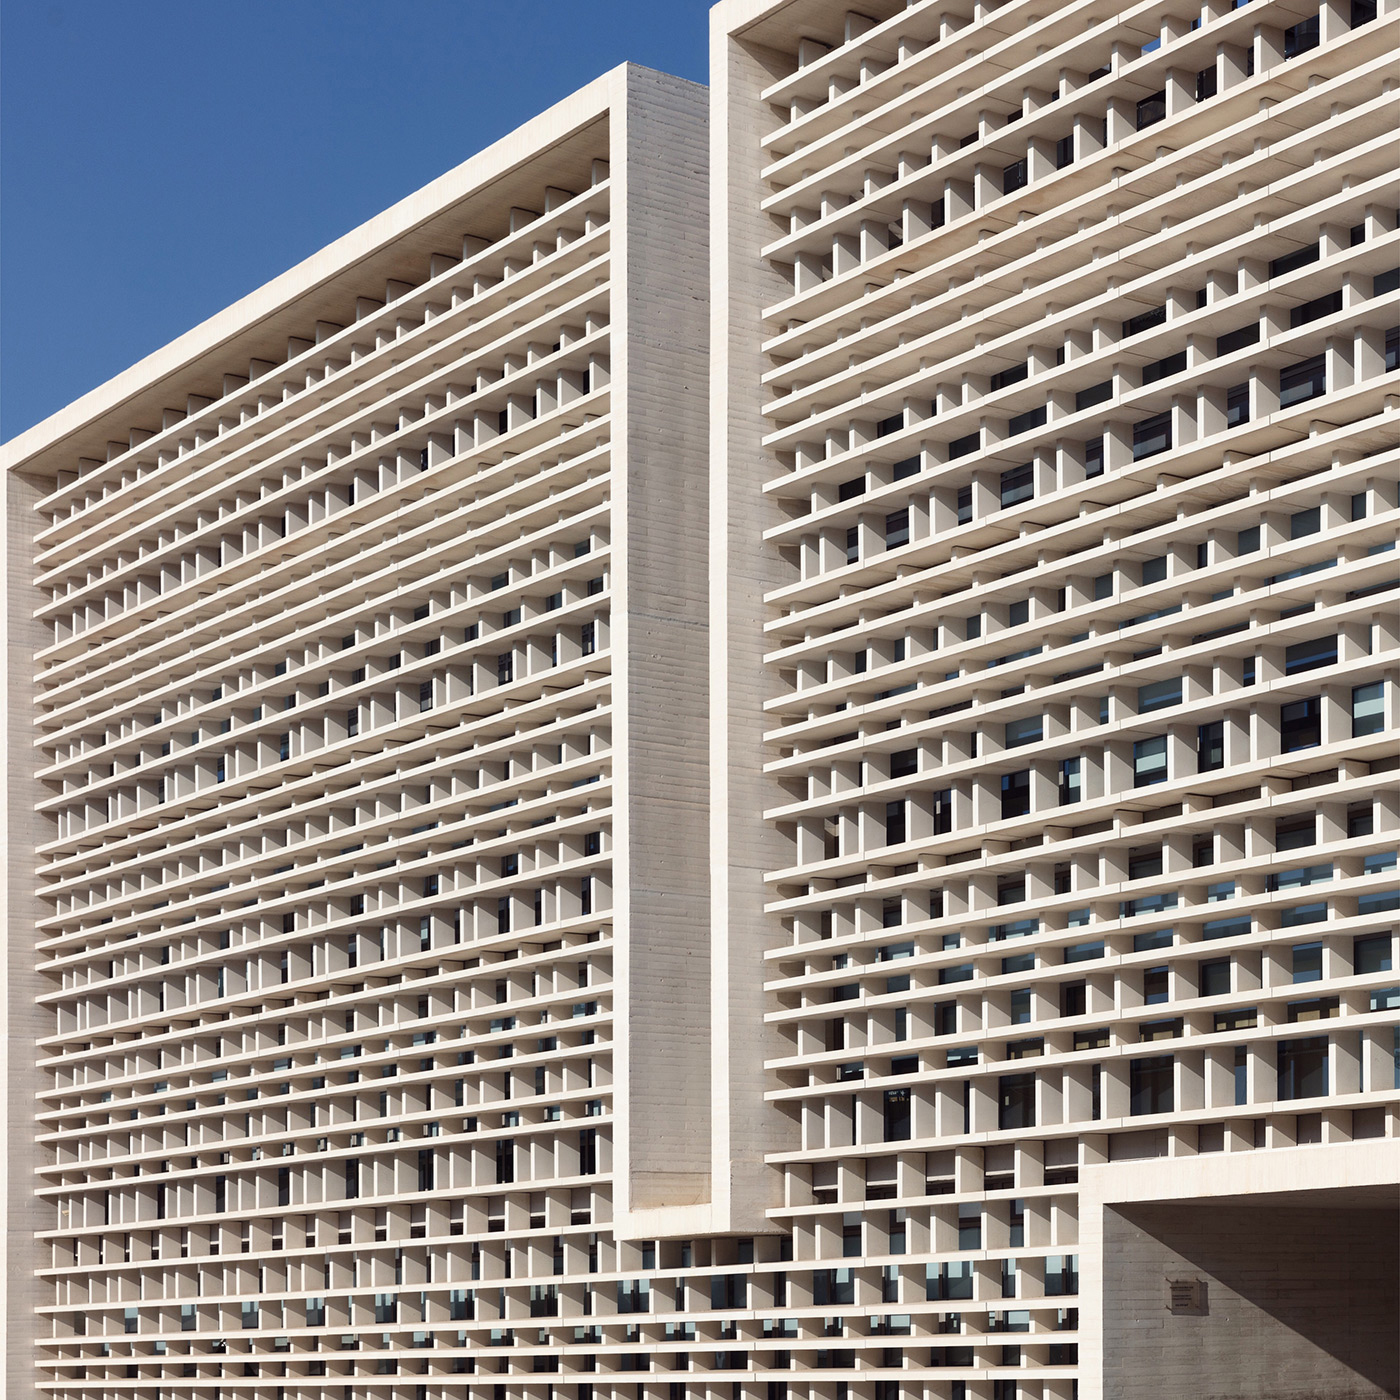 Universidad Politecnica de Valencia, ETSI Valencia, Spain Architect: Corell Monfort Palacio Arquitectos